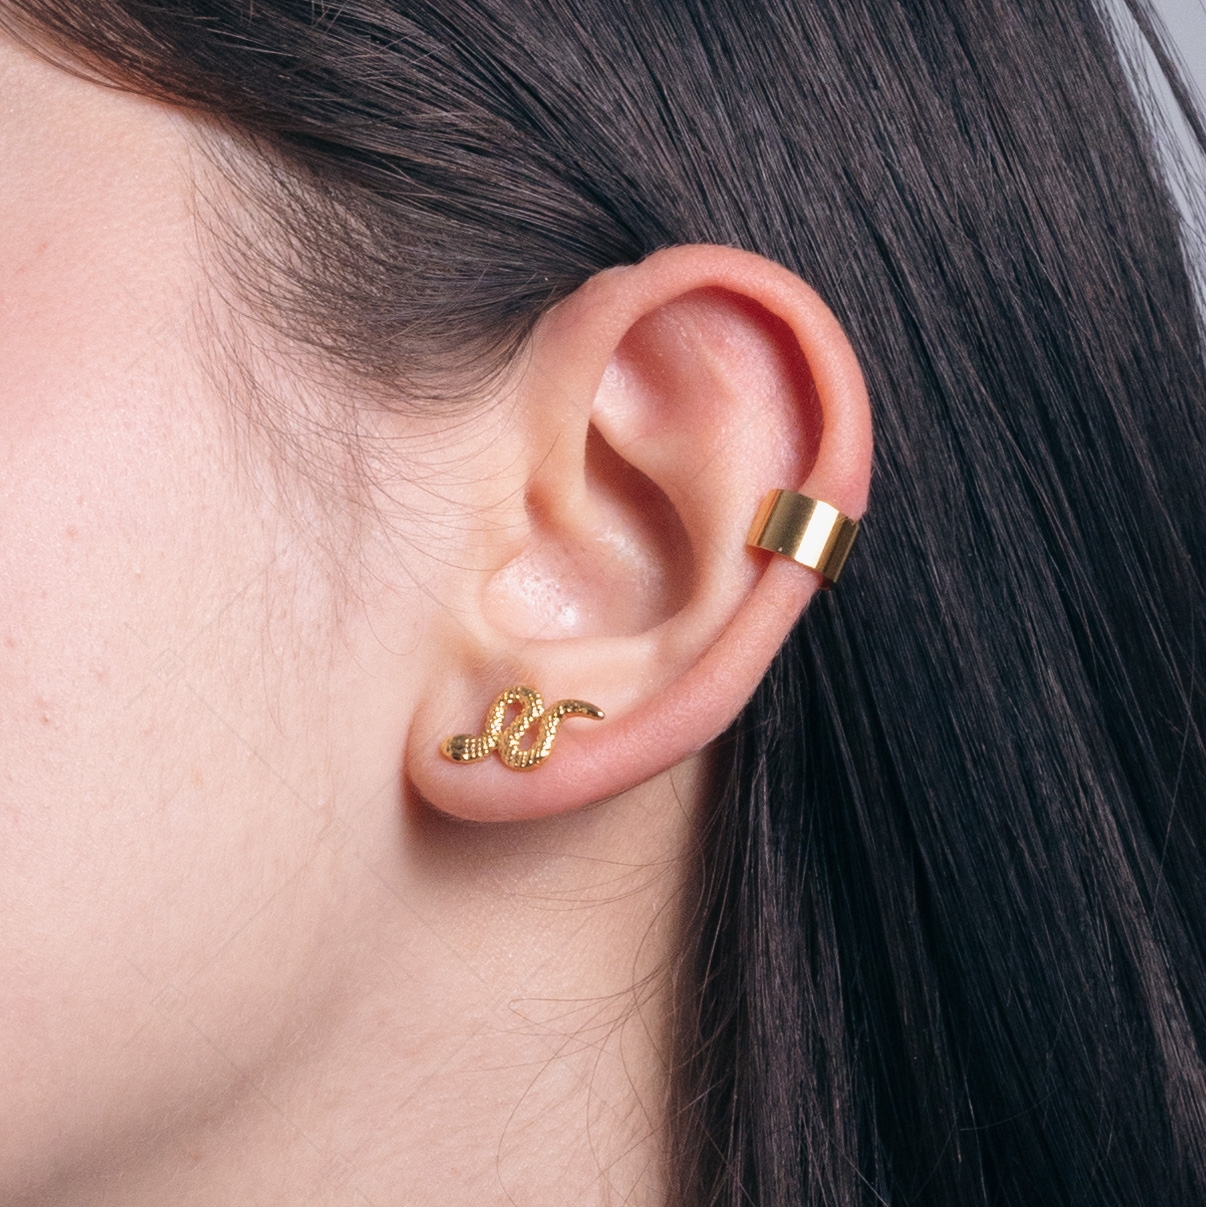 BALCANO - Serpent / Stainless Steel Snake Earrings, 18K Gold Plated (141273BC88)